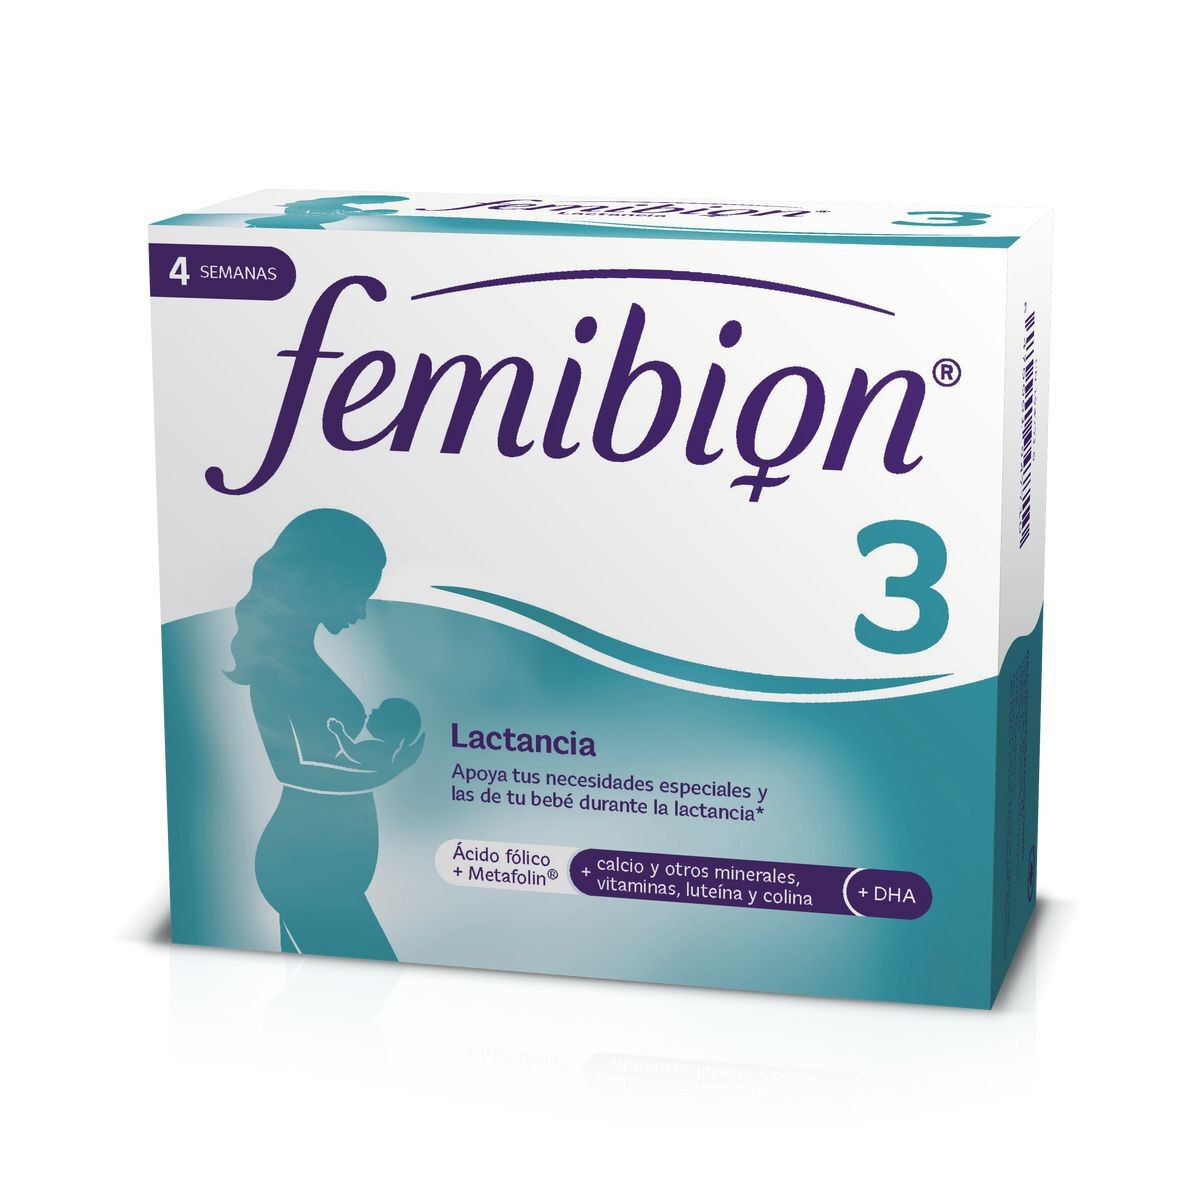 Femibion 3 multivitaminas mujer lactancia con ácido fólico 28caps + 
28comp